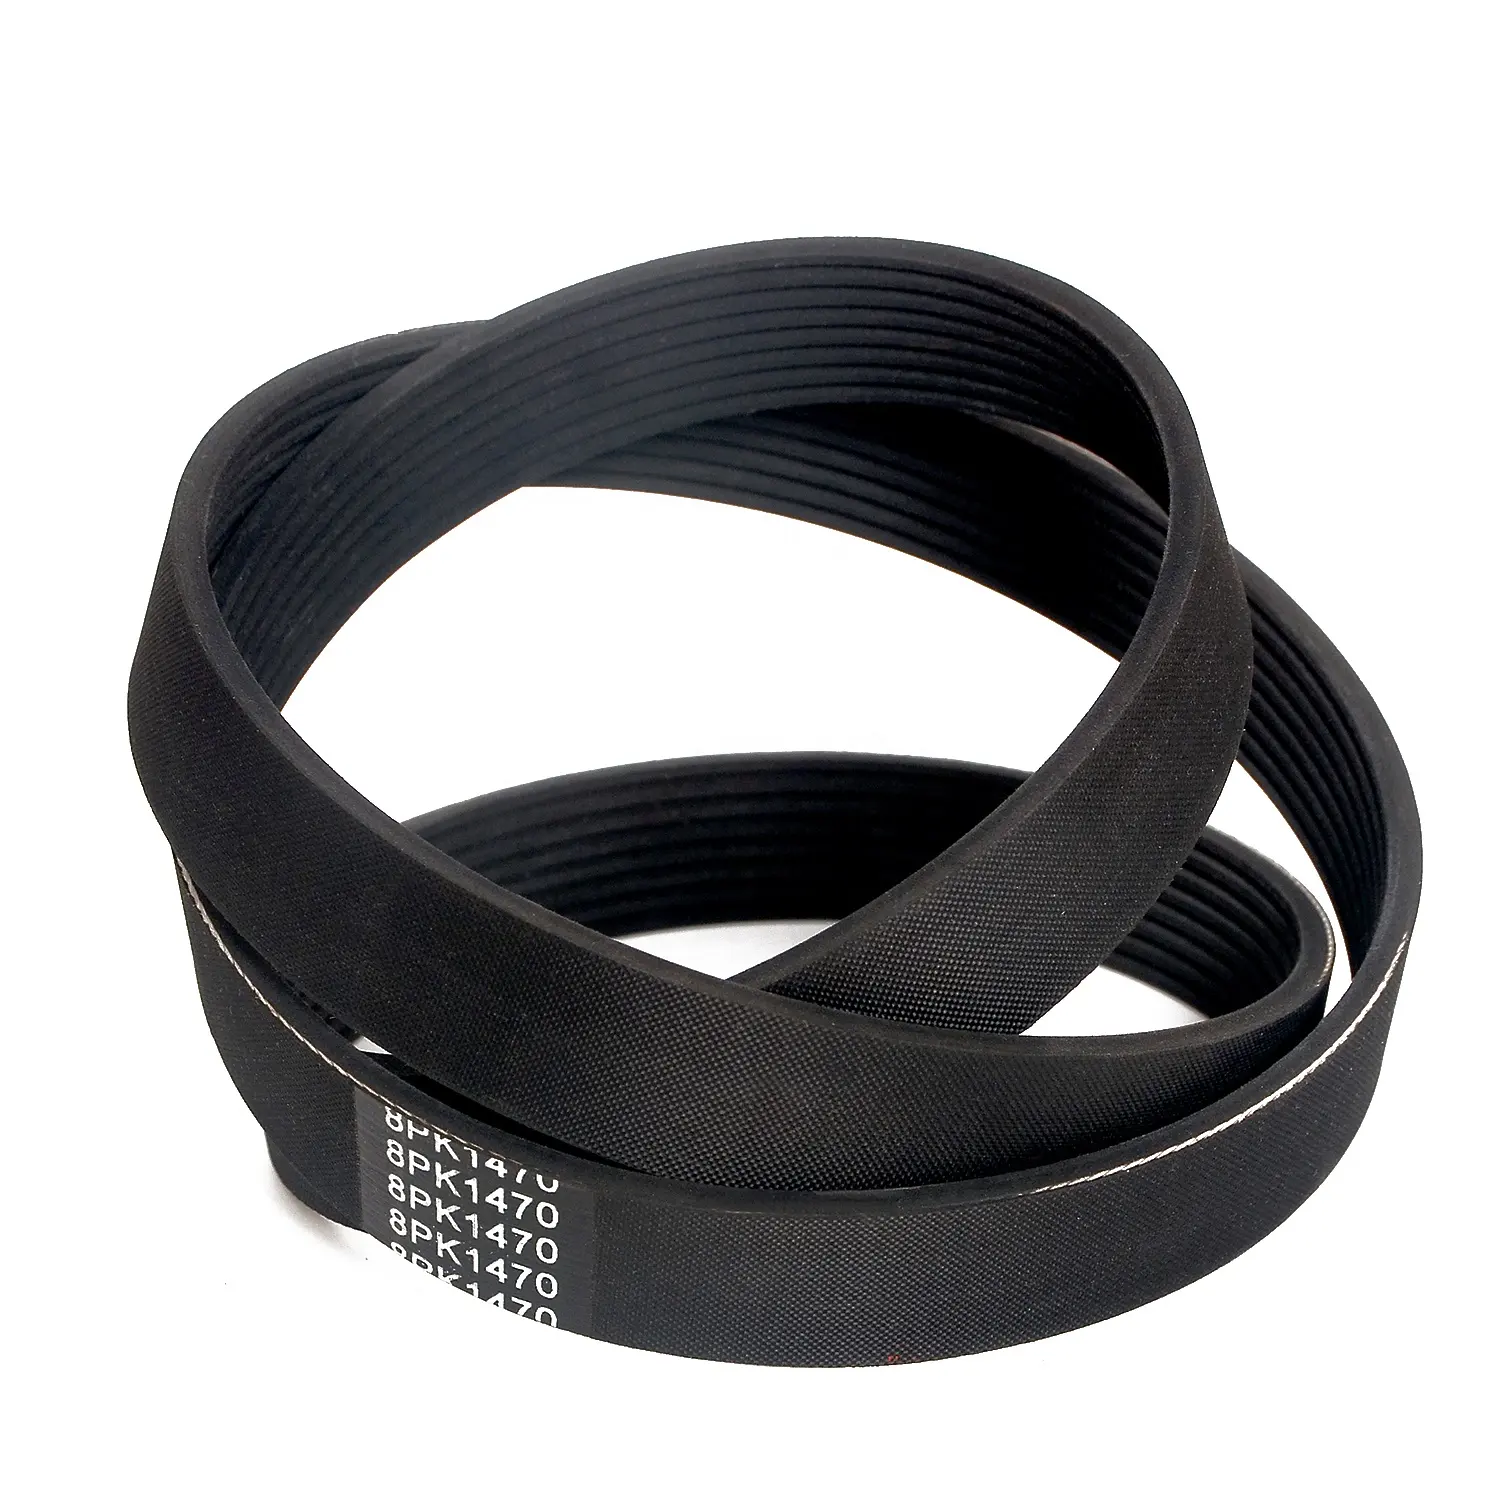 New EPDM  high quality V-belt auto fan belt 8pk1470 8pk1475